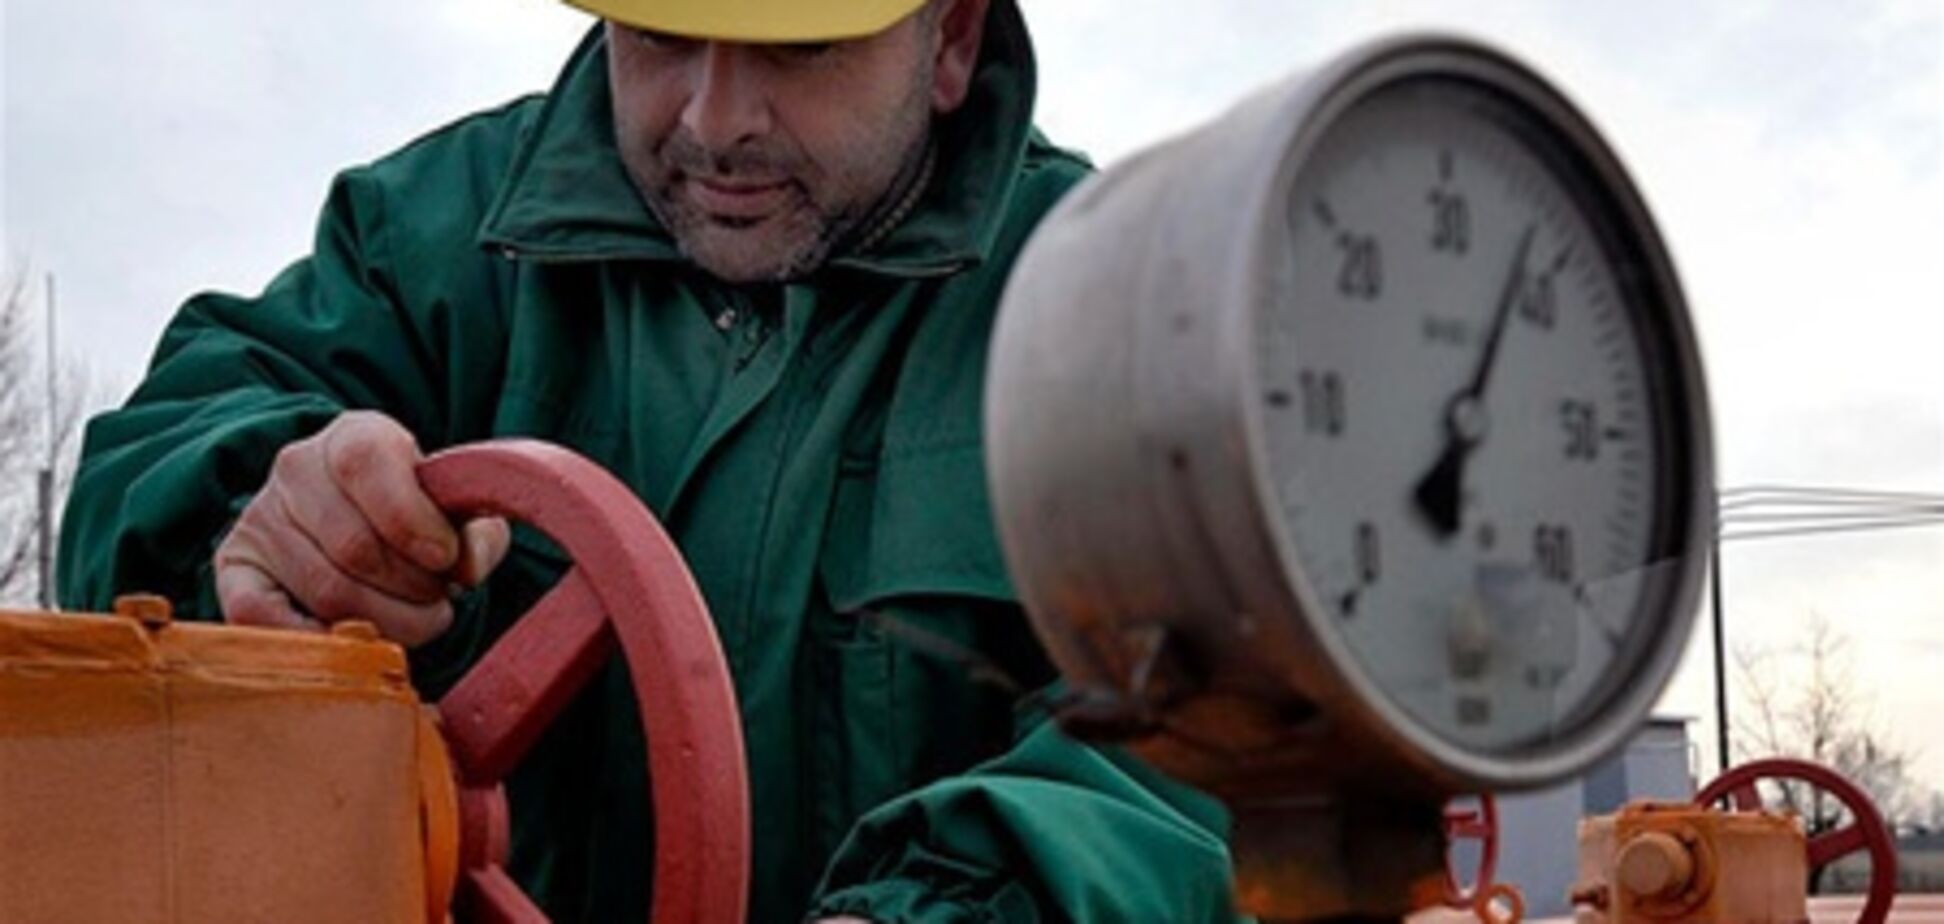 Газпром: Южный и Северный потоки снизят транзитное значение Украины до нуля